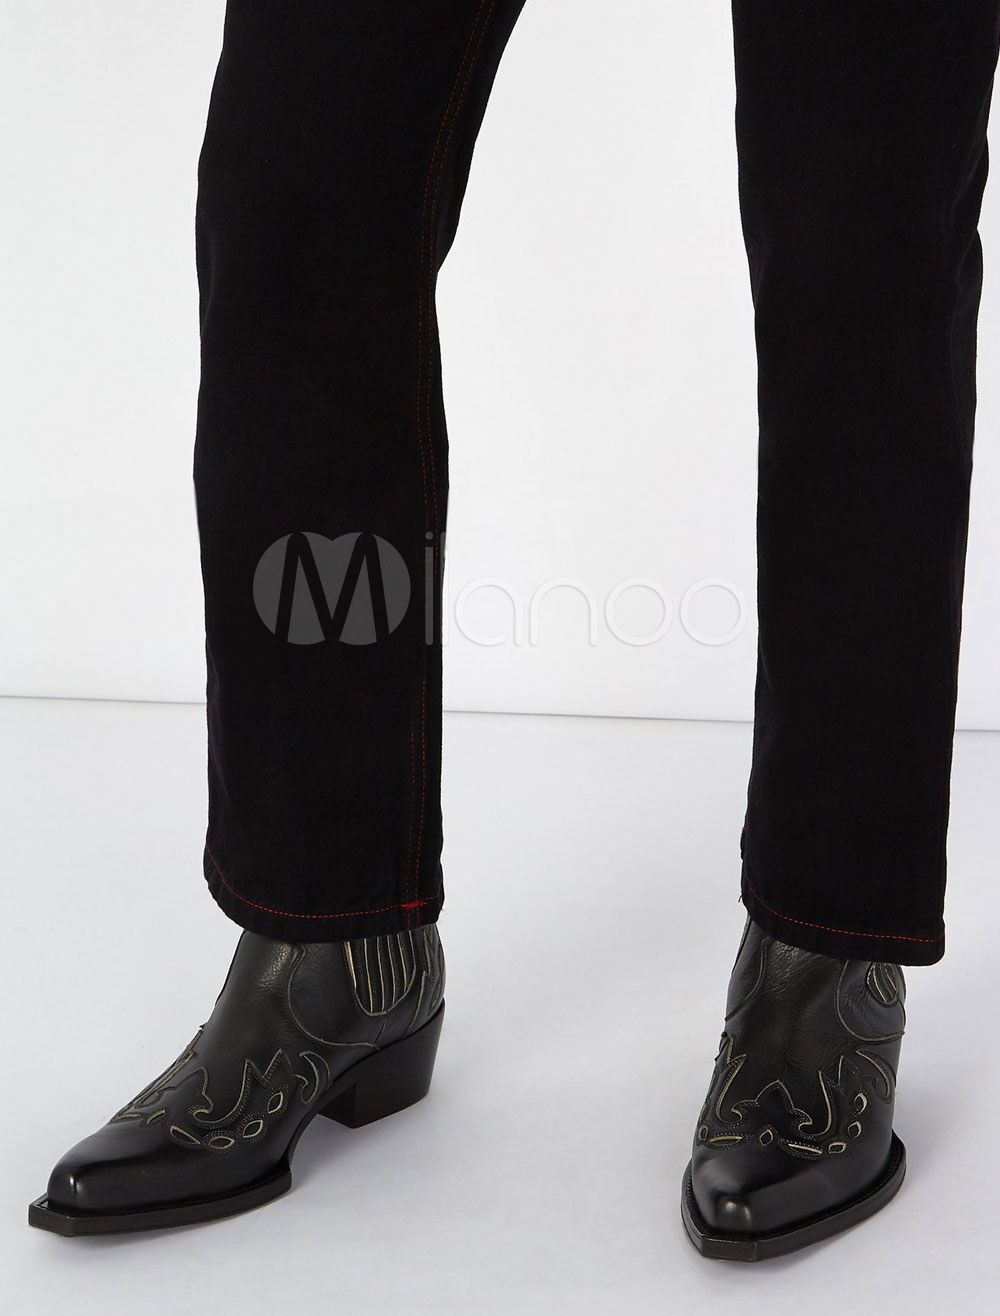 black cowboy boots outfit men